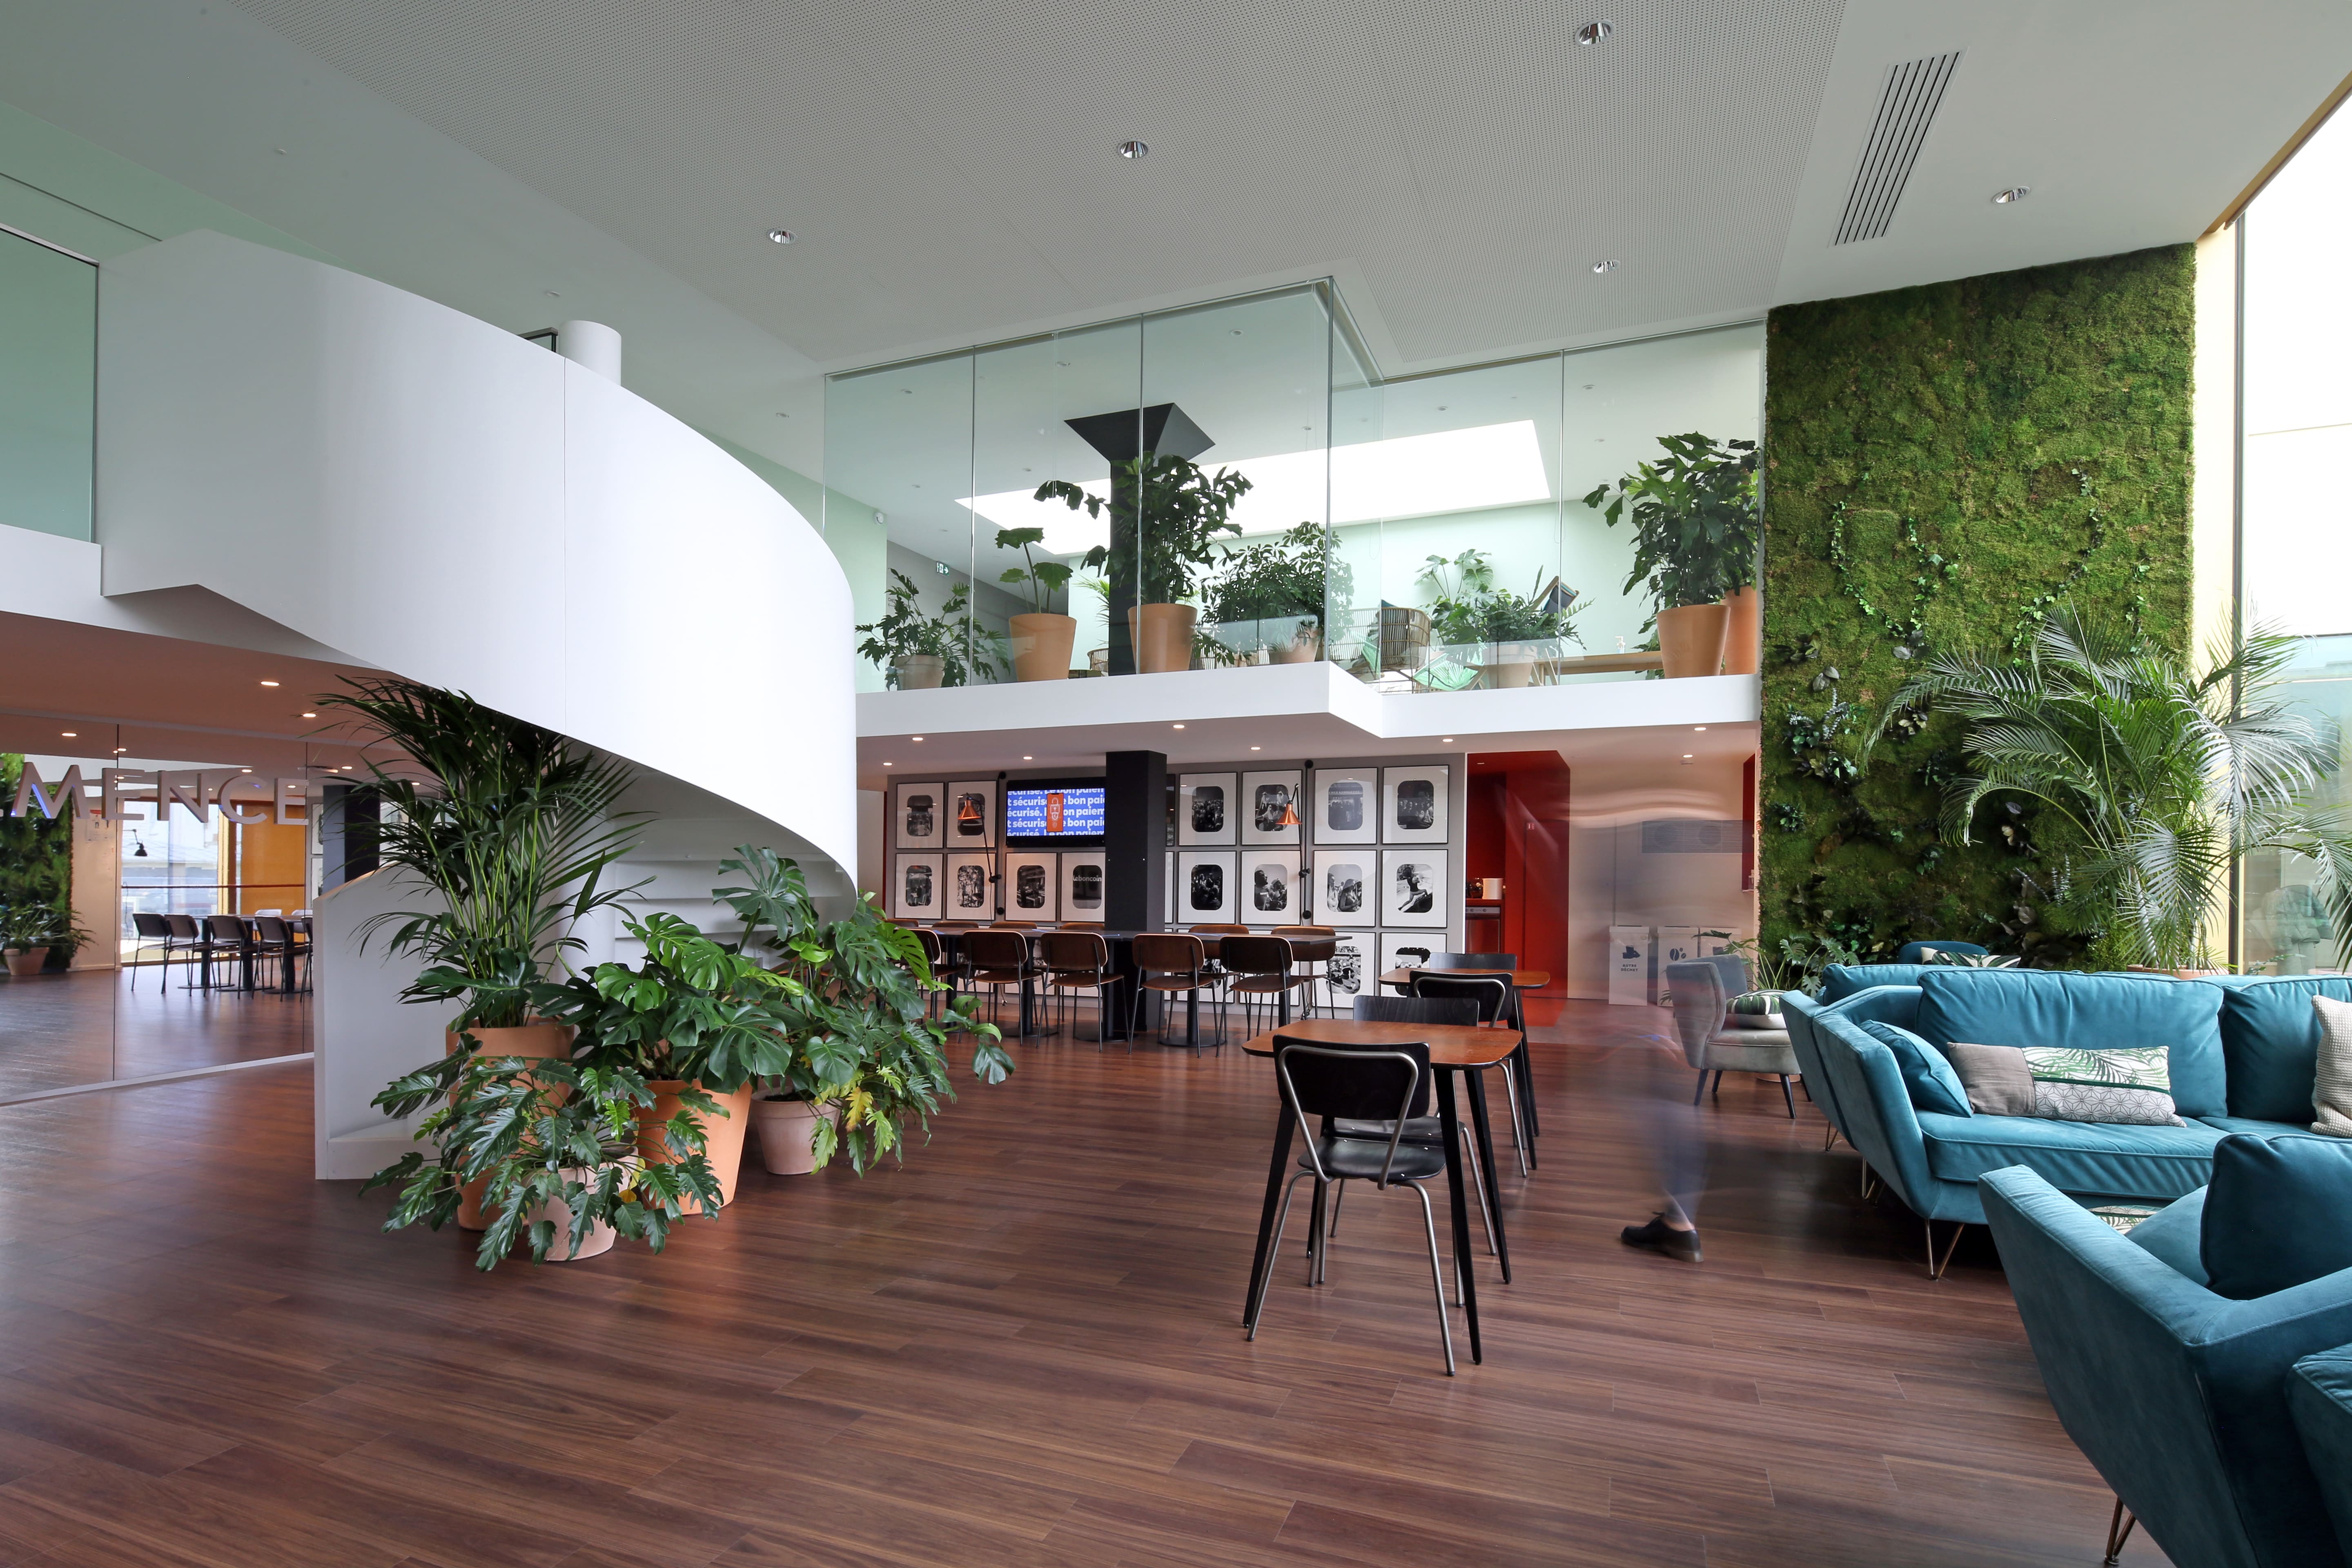 Installé au 5e étage dans un volume en double hauteur, le work café « Chez Clémence » offre un lieu de respiration dans une ambiance végétale et baignée de lumière. Un escalier central scénarisé permet d’accéder au toit-terrasse aménagé.